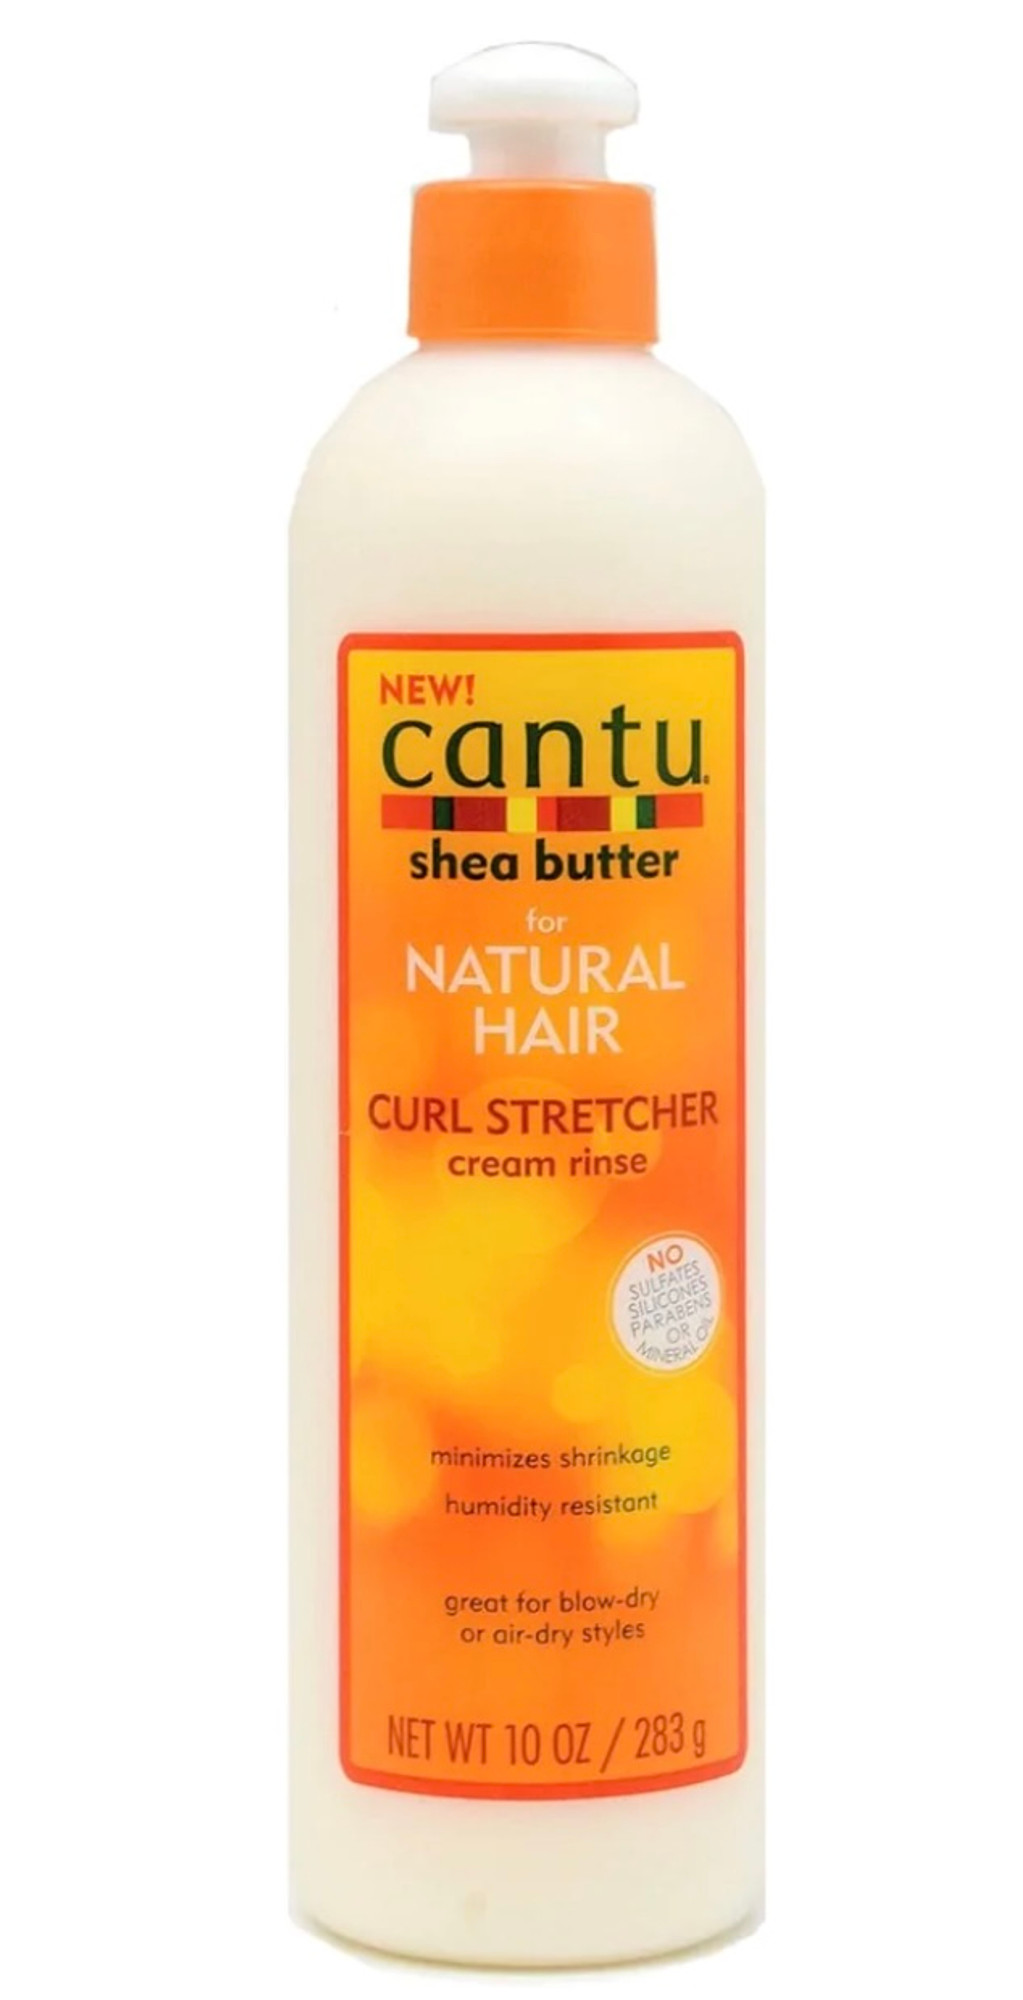 Cantu Shea Butter for Natural Curl Stretcher Cream Rinse